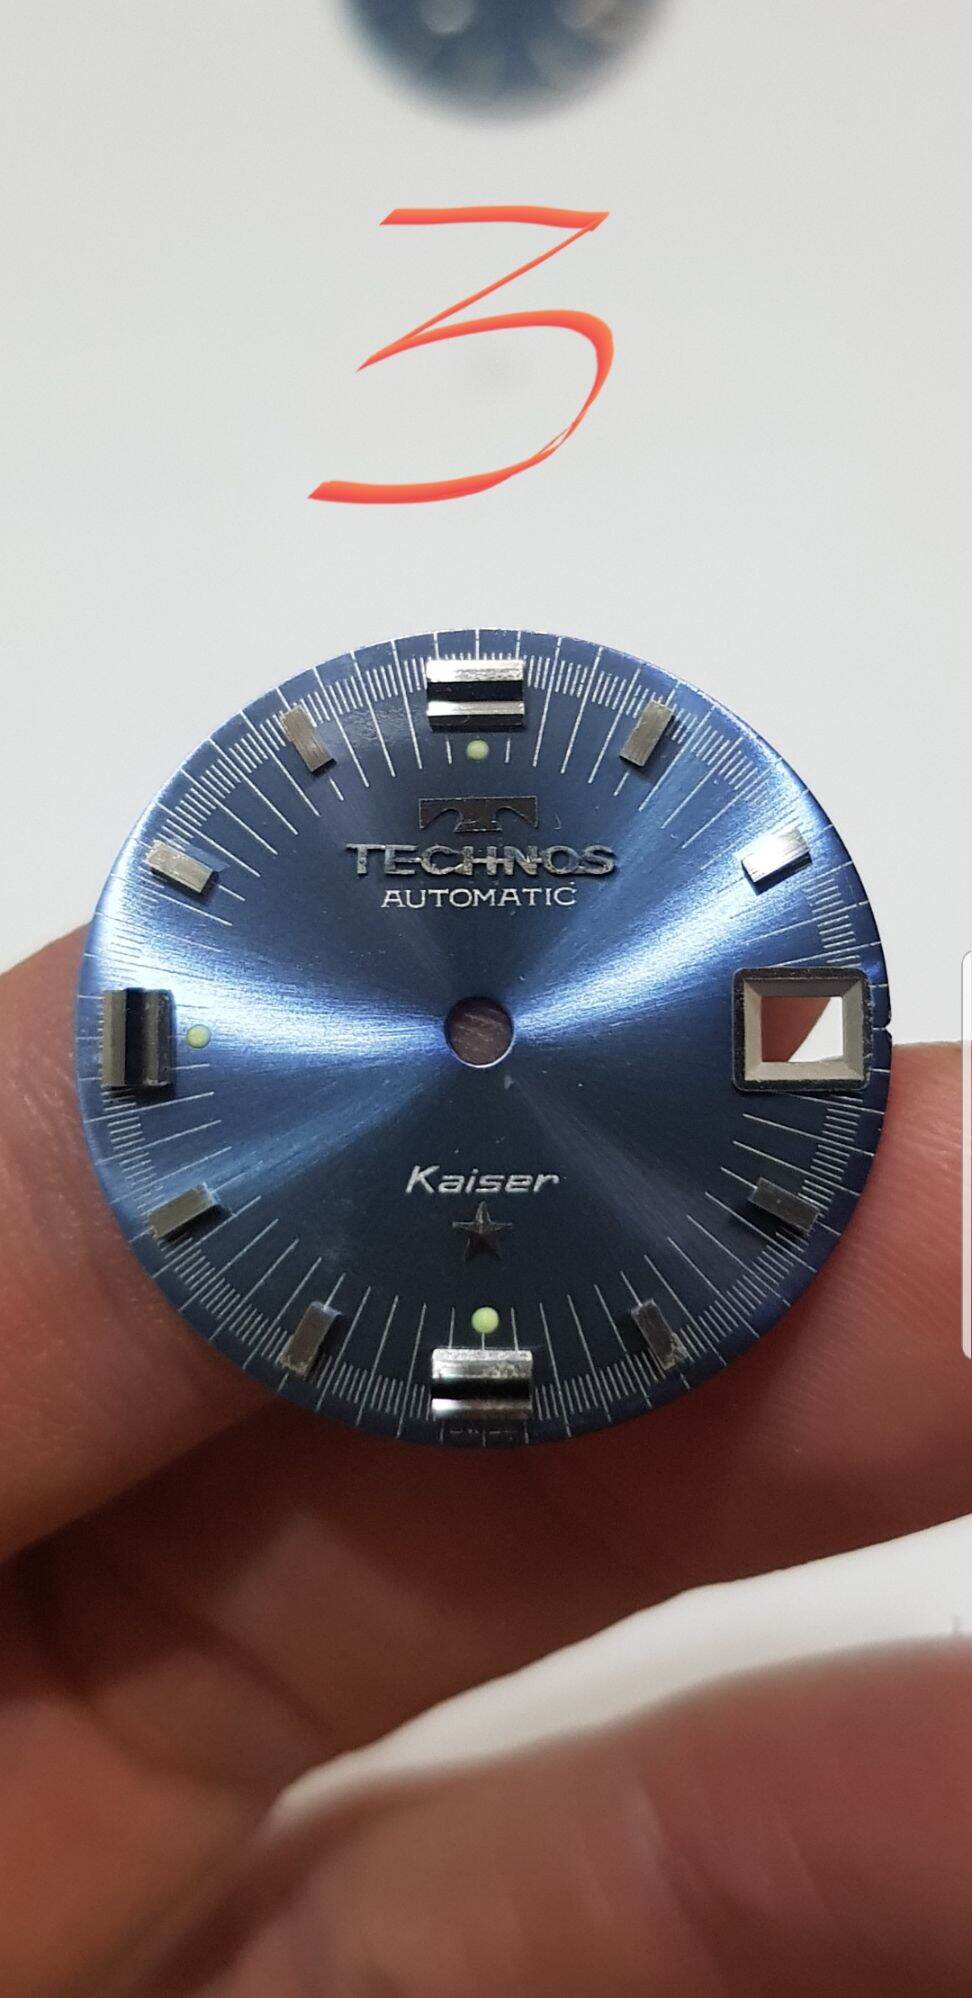 mặt số đồng hồ TECHNOS zin bóc máy đẹp như hình. xem kích cỡ phần mô tả